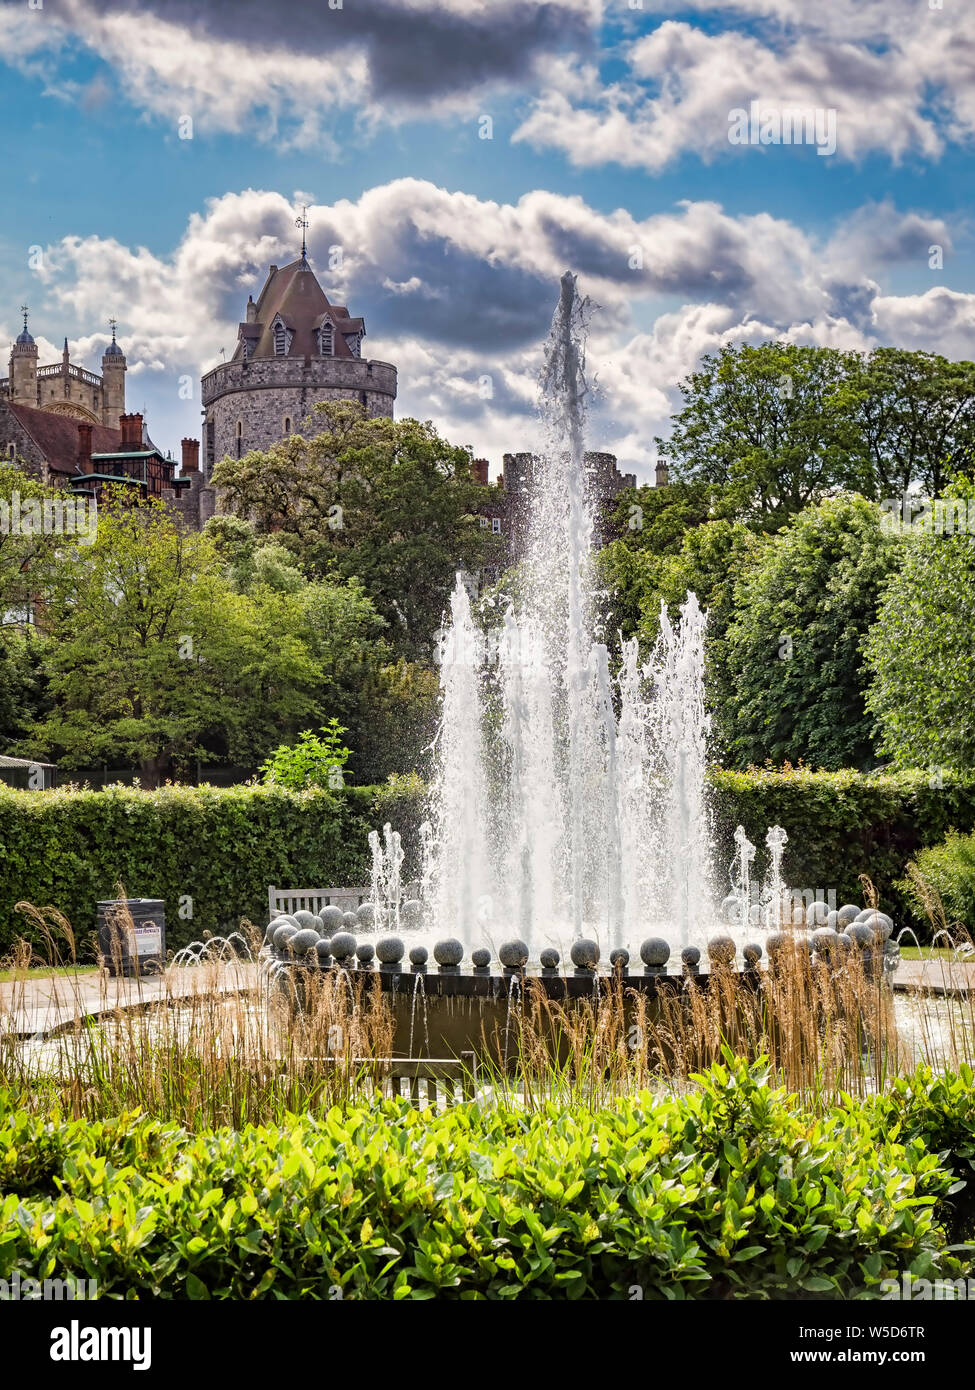 La fontaine du Jubilé de diamant dans le Goswells park, Windsor, Berkshire, Angleterre, Royaume-Uni, avec le château de Windsor à l'arrière-plan. La fontaine a été construite à c Banque D'Images